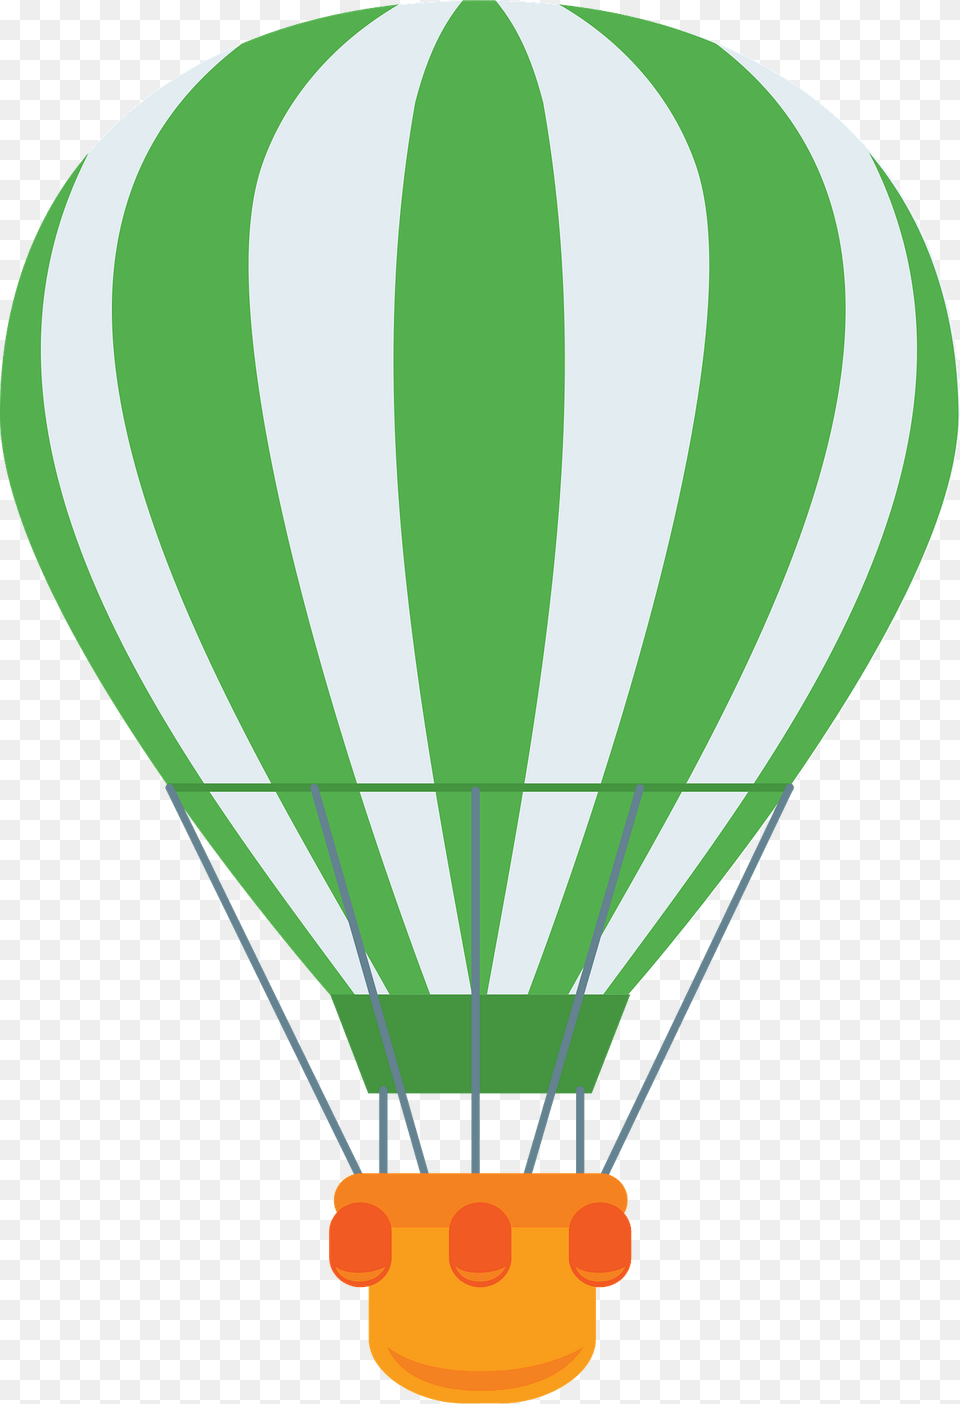 Hot Air Balloon Clipart, Aircraft, Hot Air Balloon, Transportation, Vehicle Free Png Download